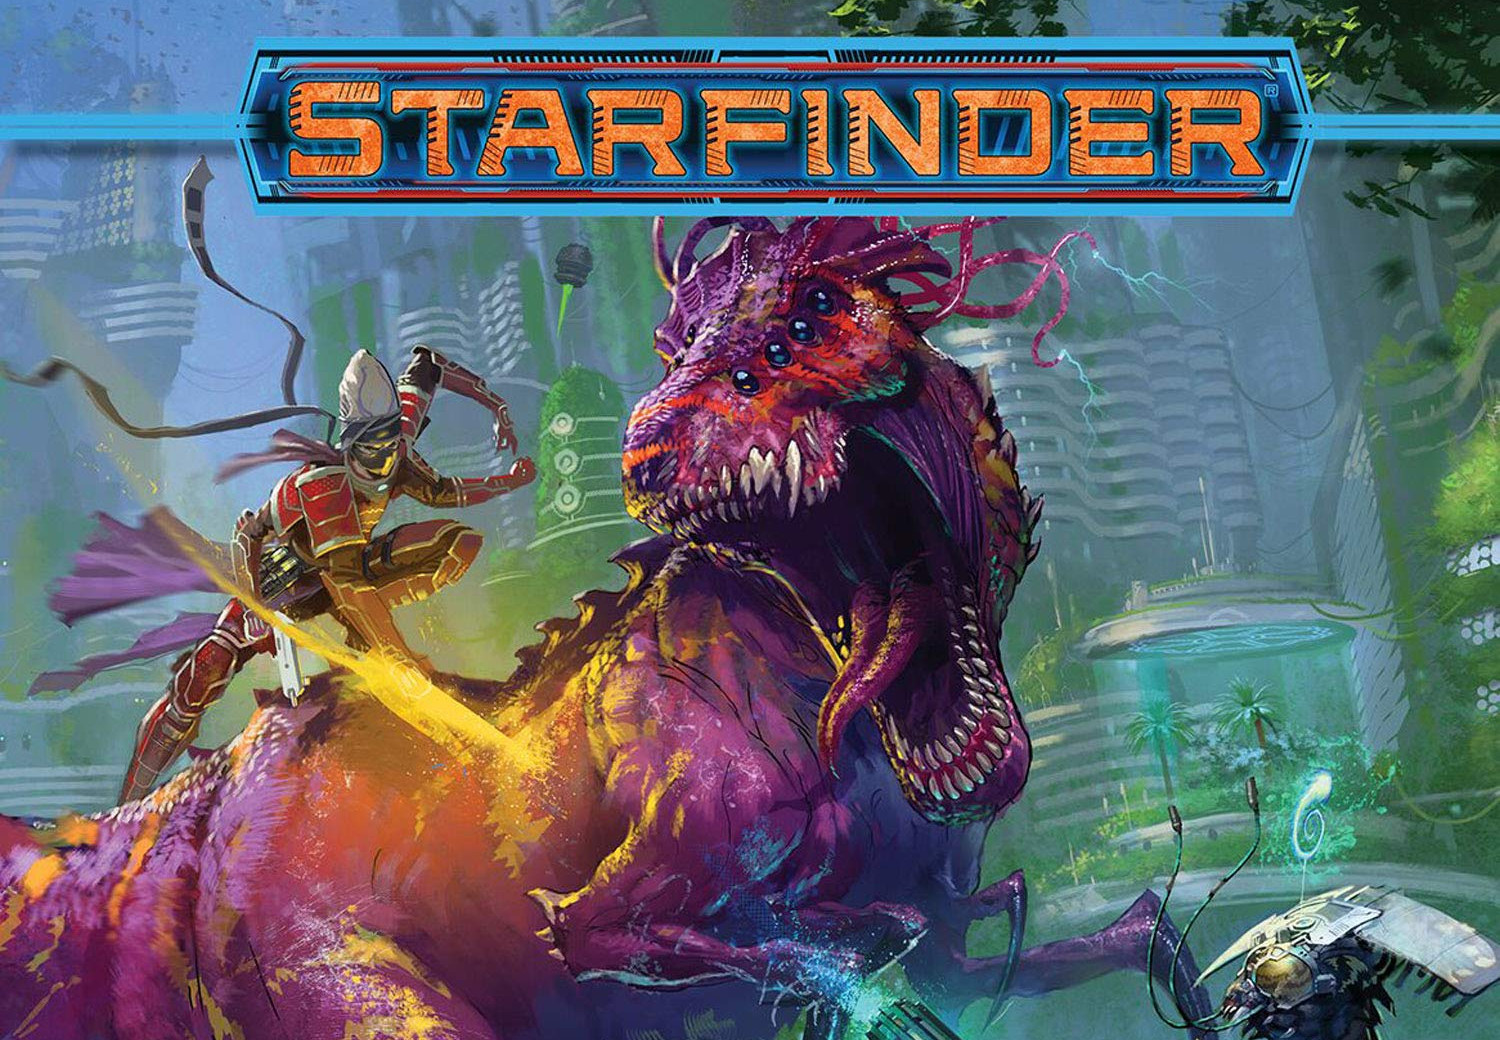 Starfinder Pact Worlds Digital CD Key